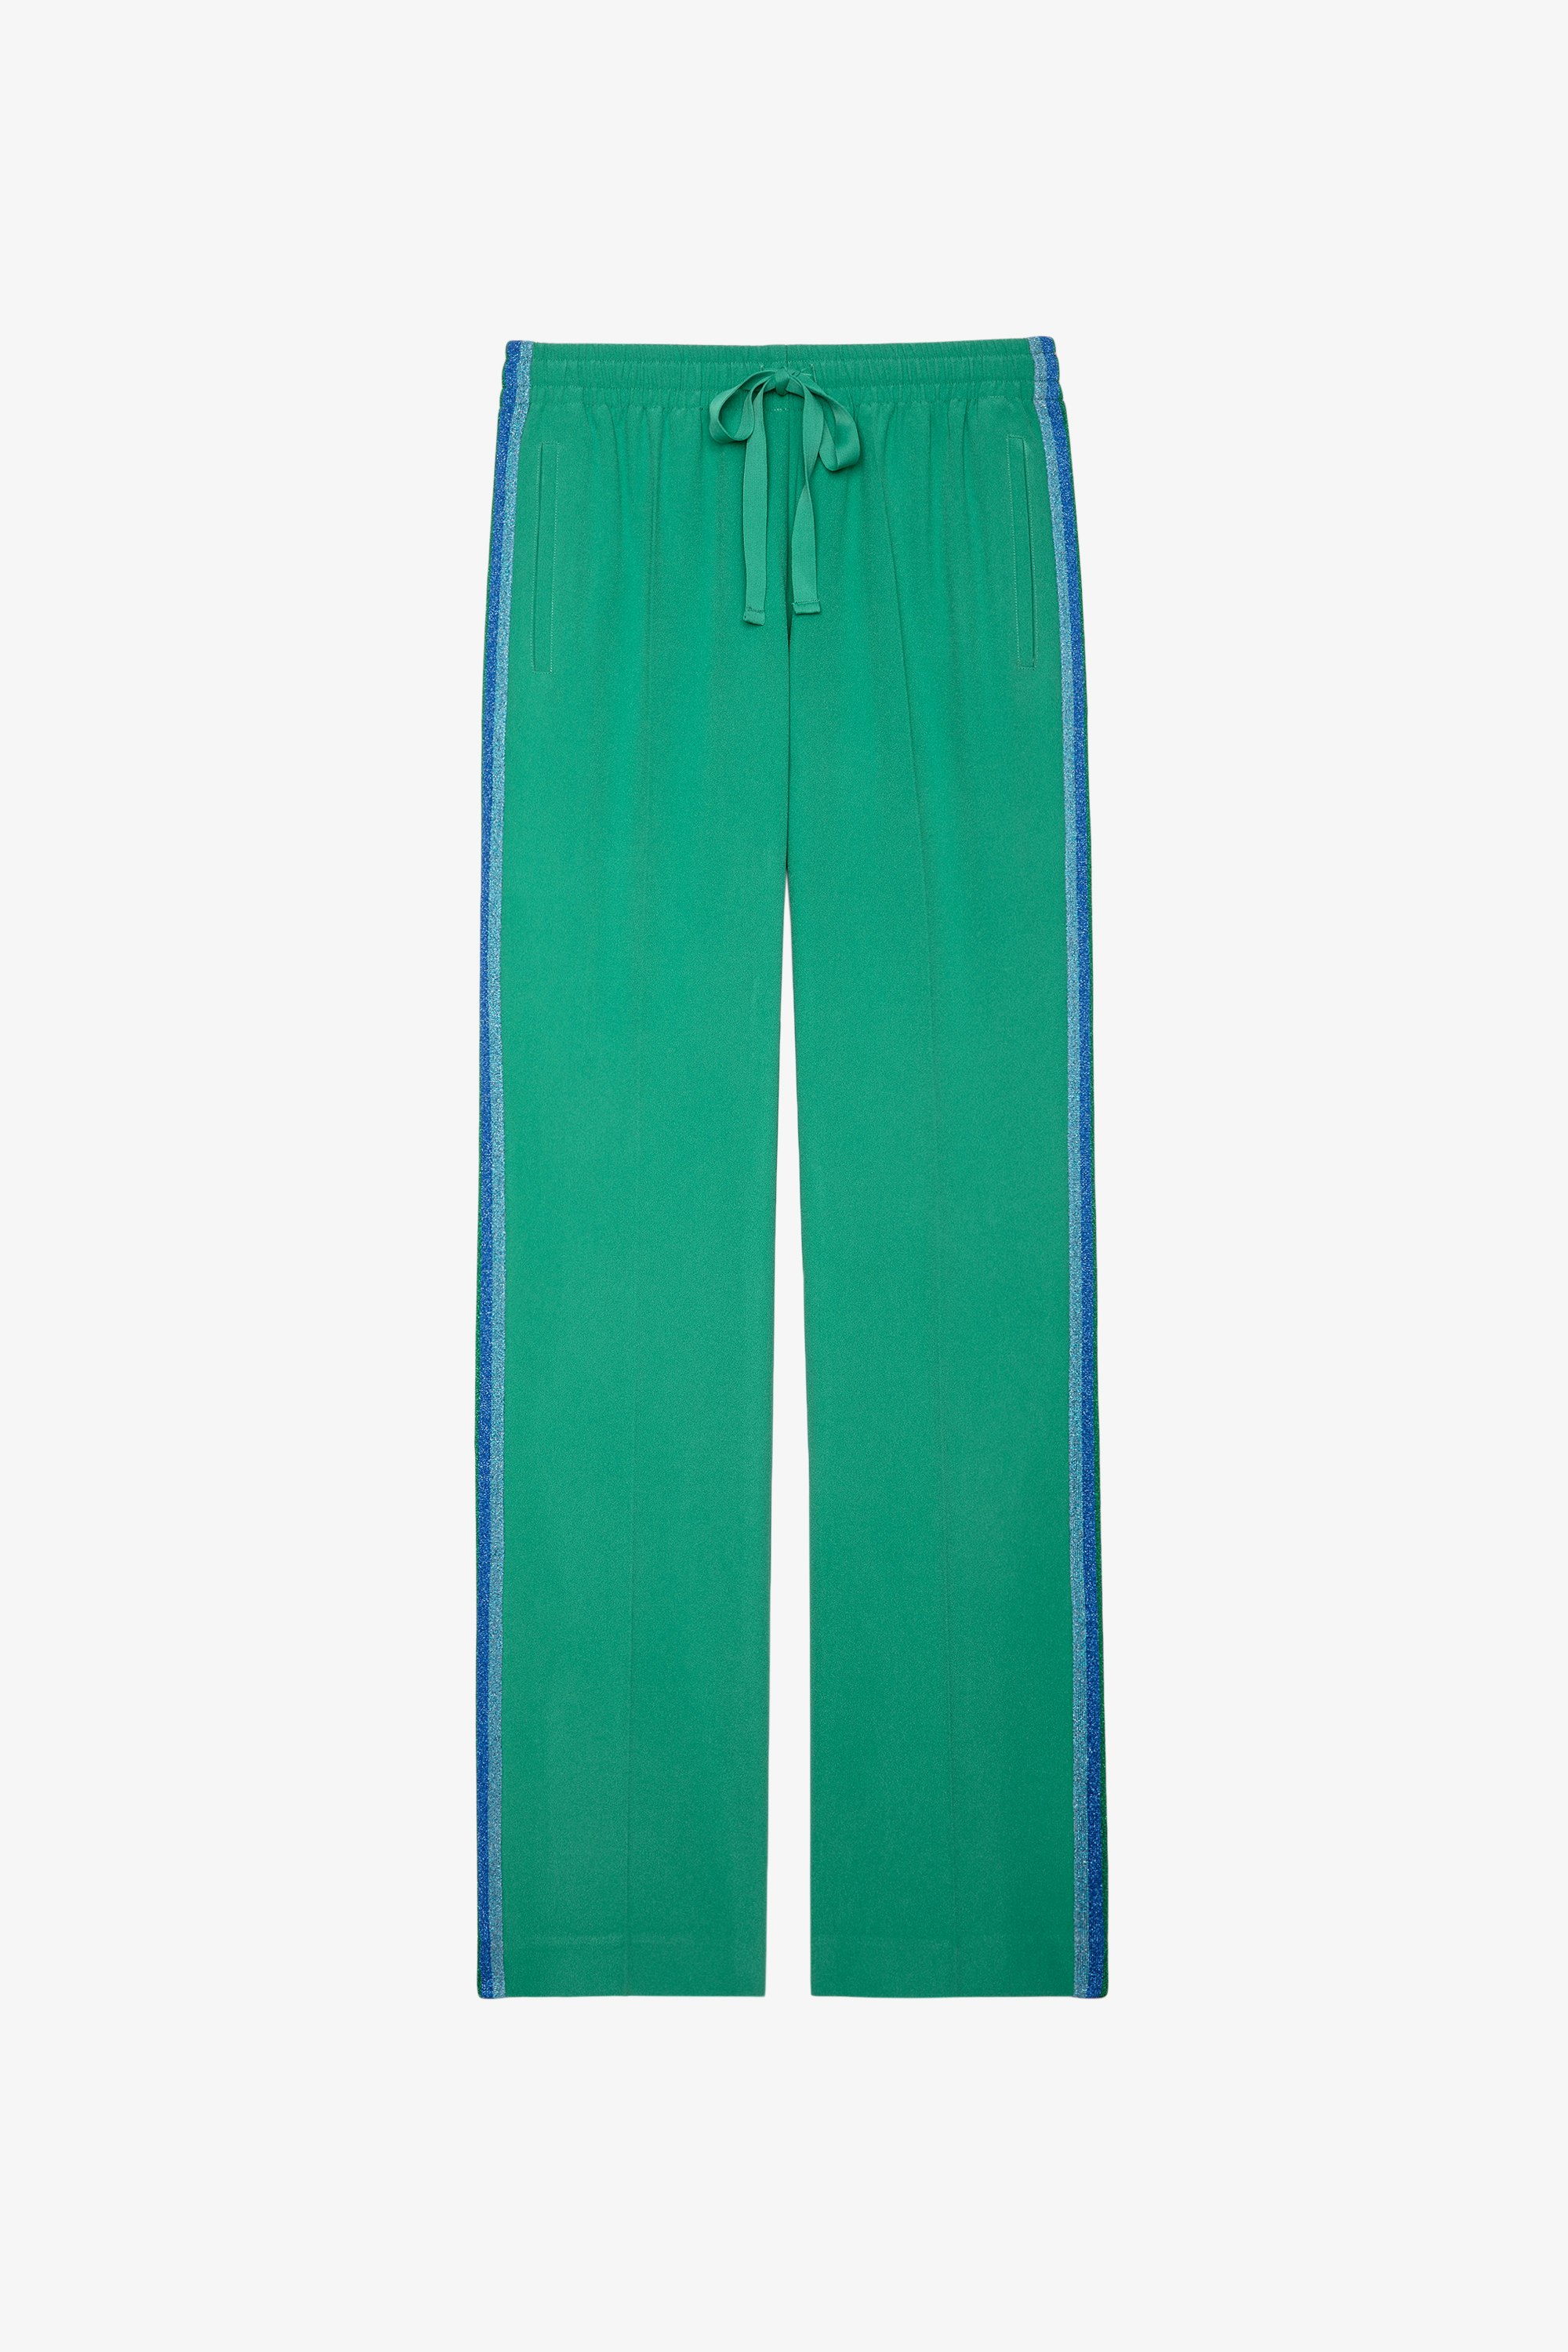 Pantalón Pomy Crepe Pantalón fluido verde con bandas laterales de purpurina para mujer